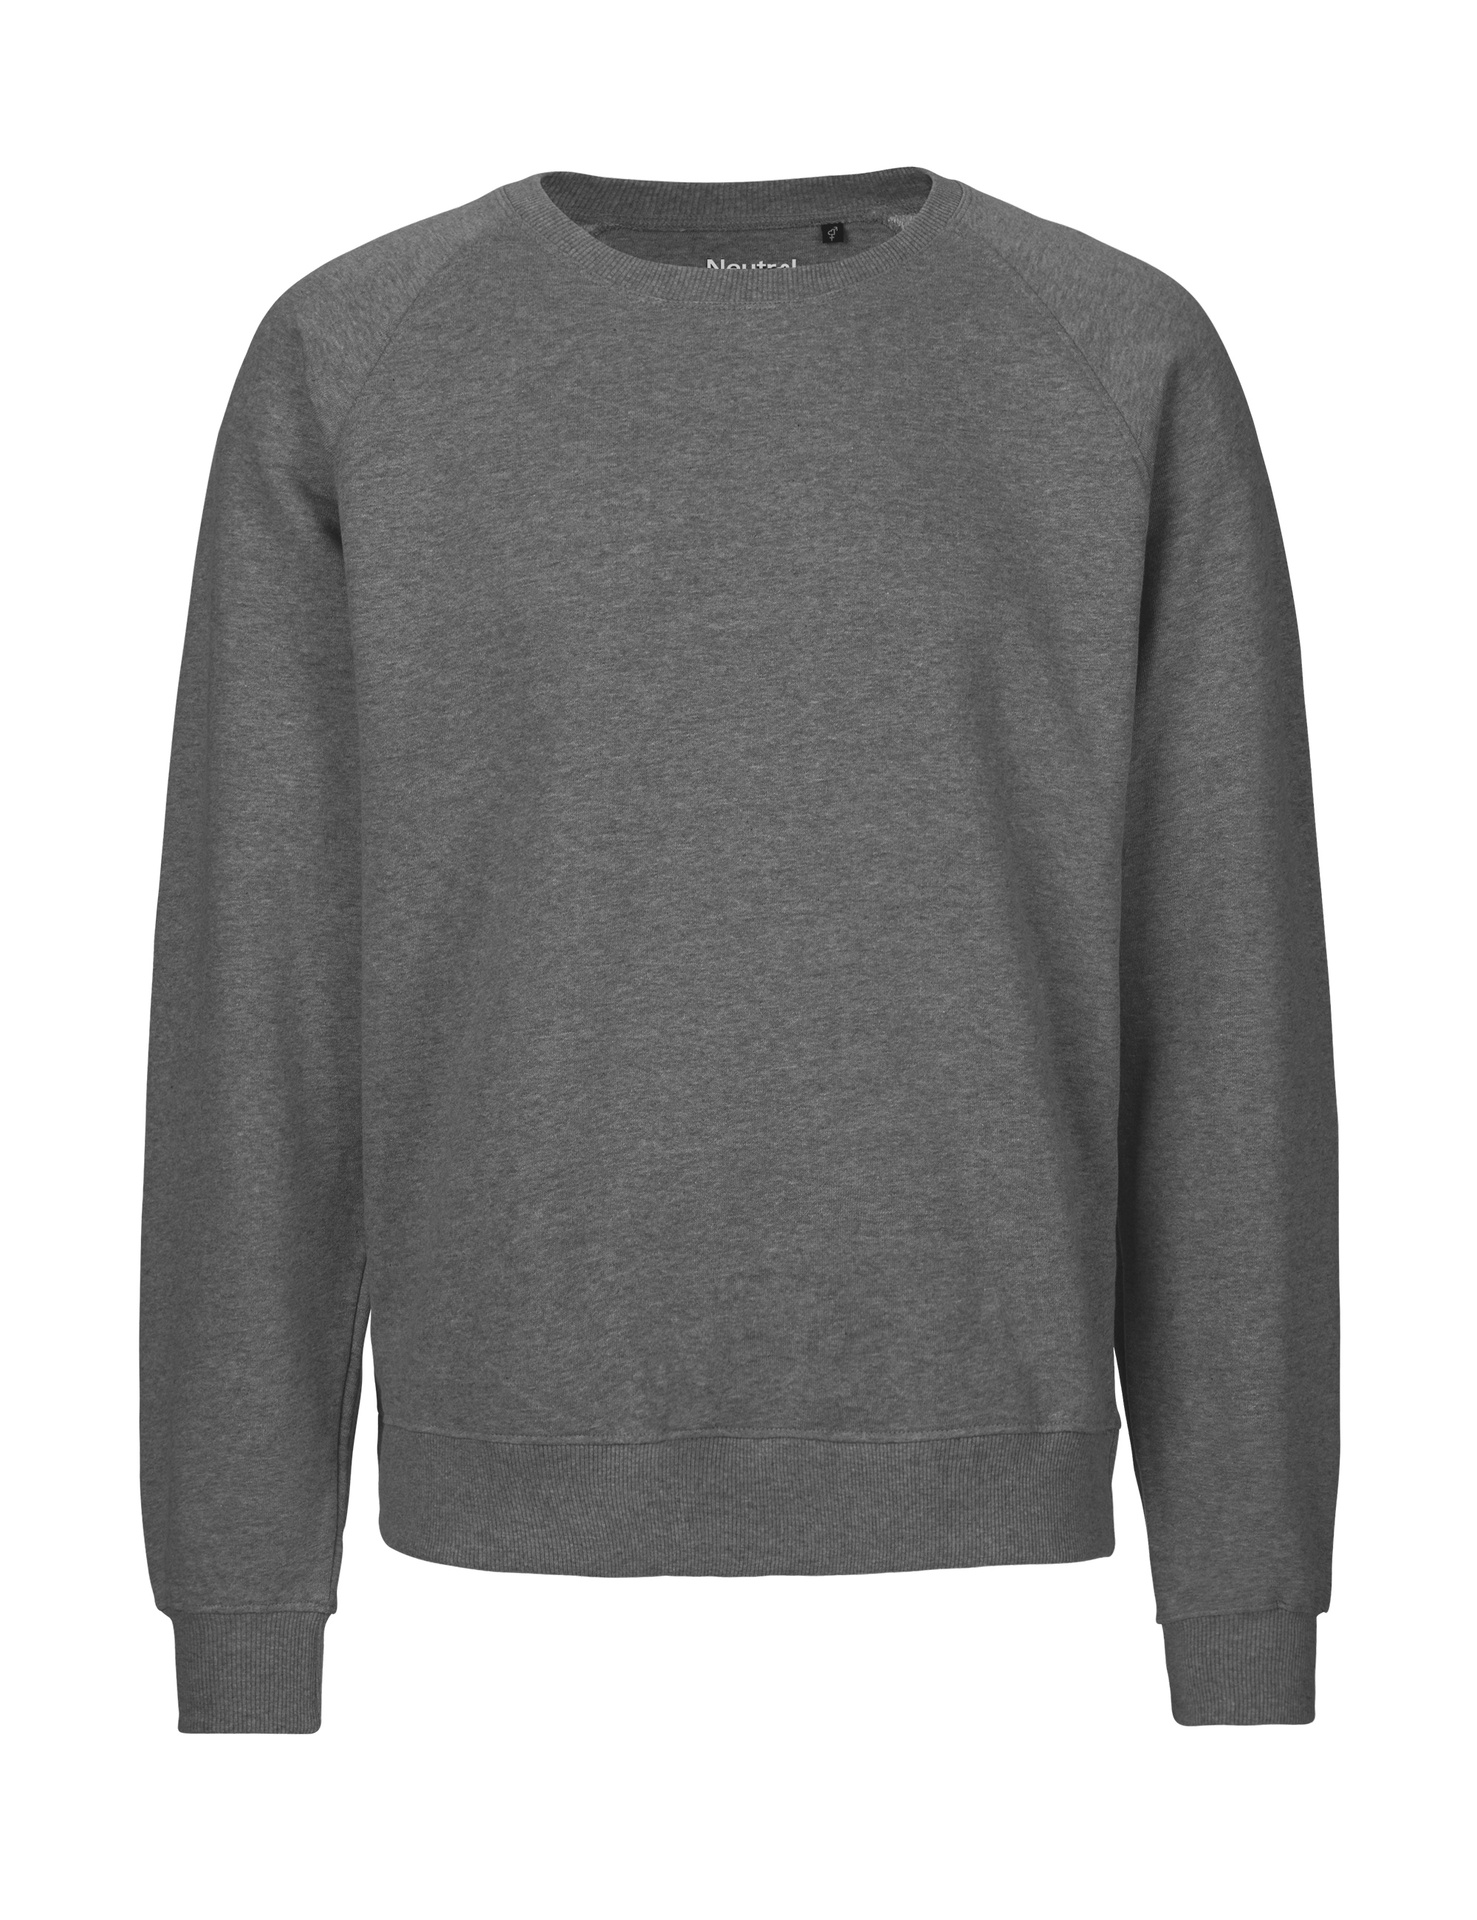 [PR/02704] Unisex Sweatshirt (Dark Heather 08, 4XL)